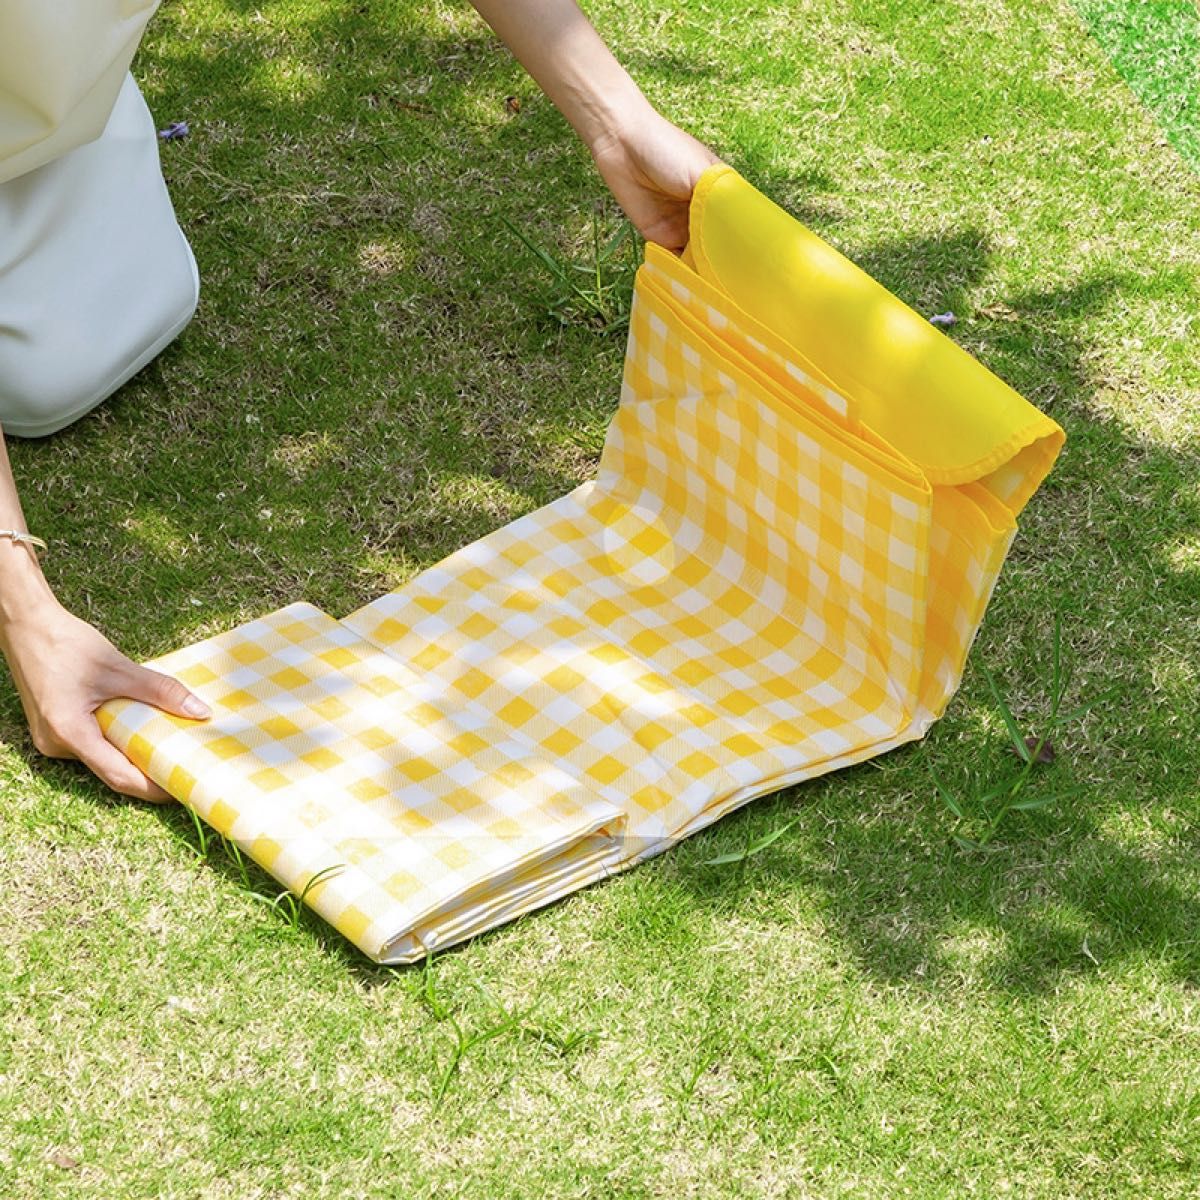 黄色 大判レジャーシート 厚手 防水 折畳 ピクニック レジャー キャンプ 撥水